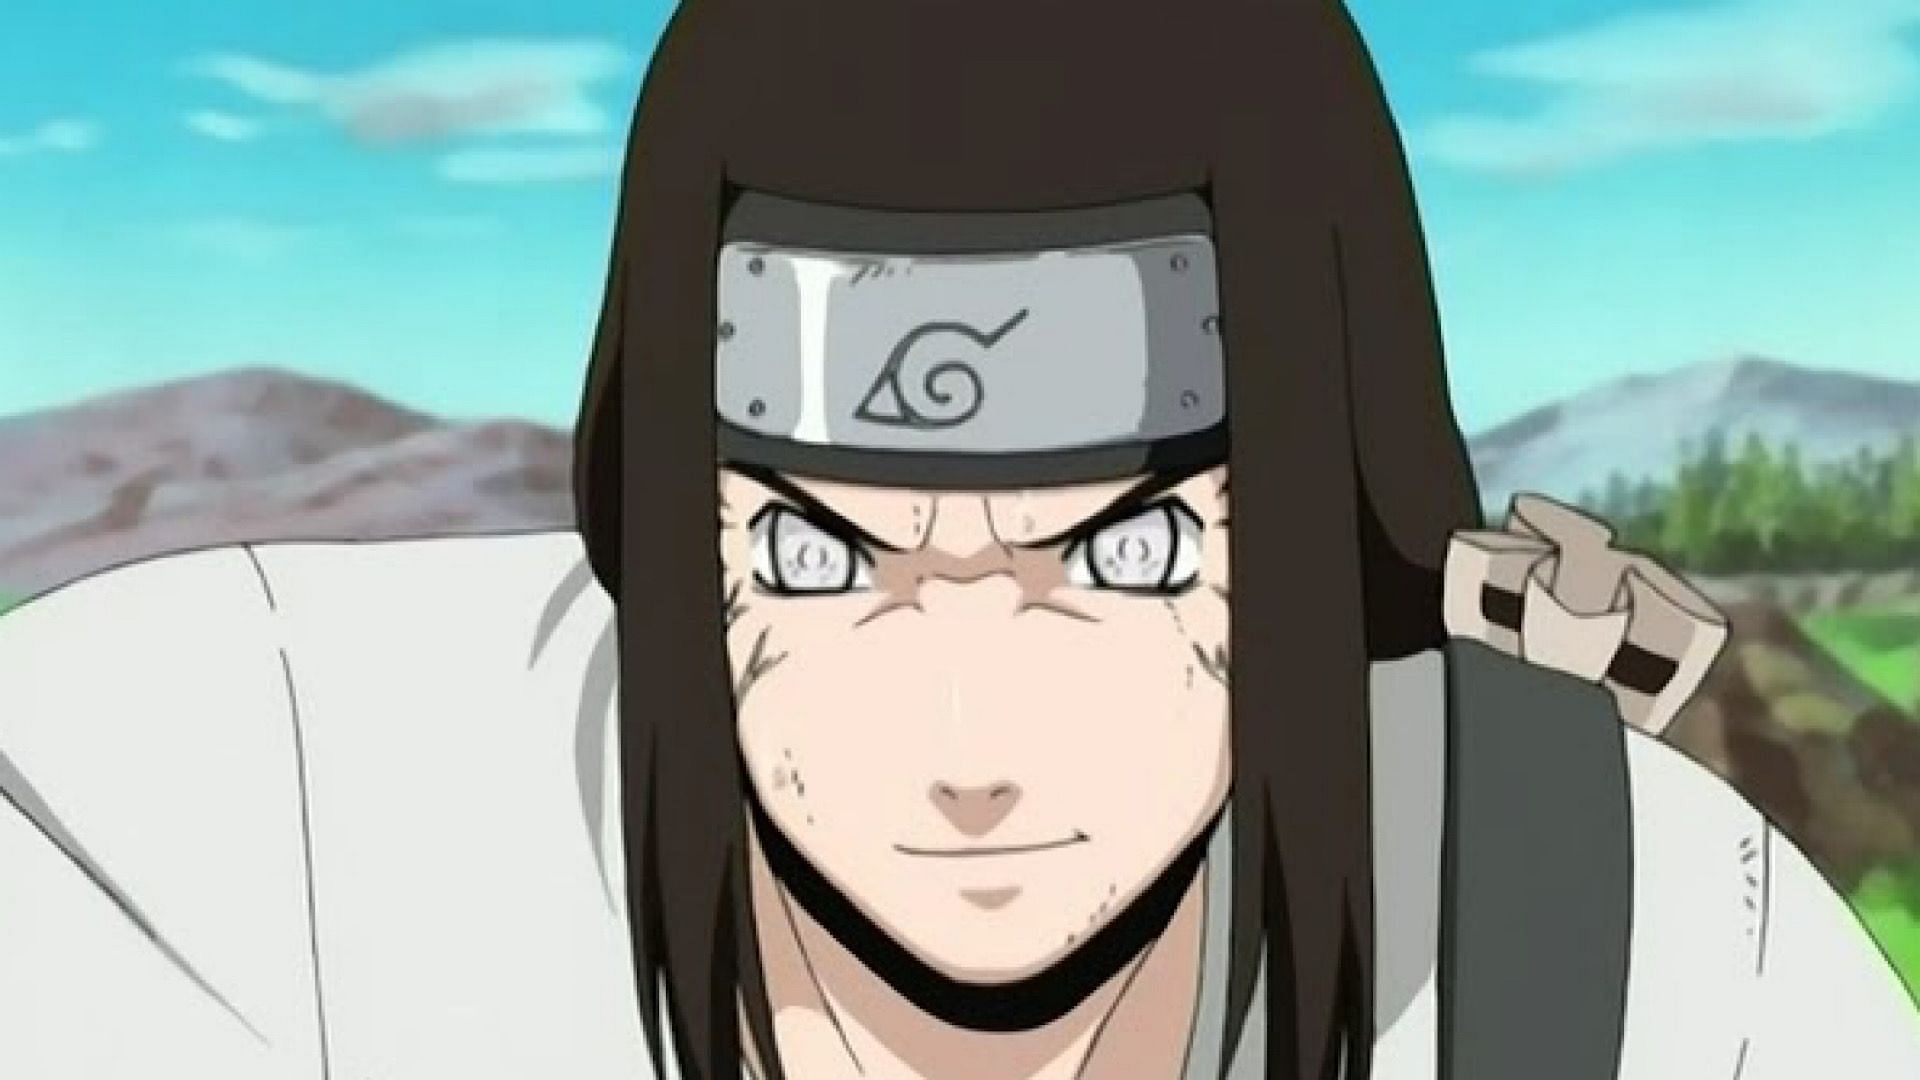 Neji specializes in perfecting Taijutsu (Image via Naruto Anime)